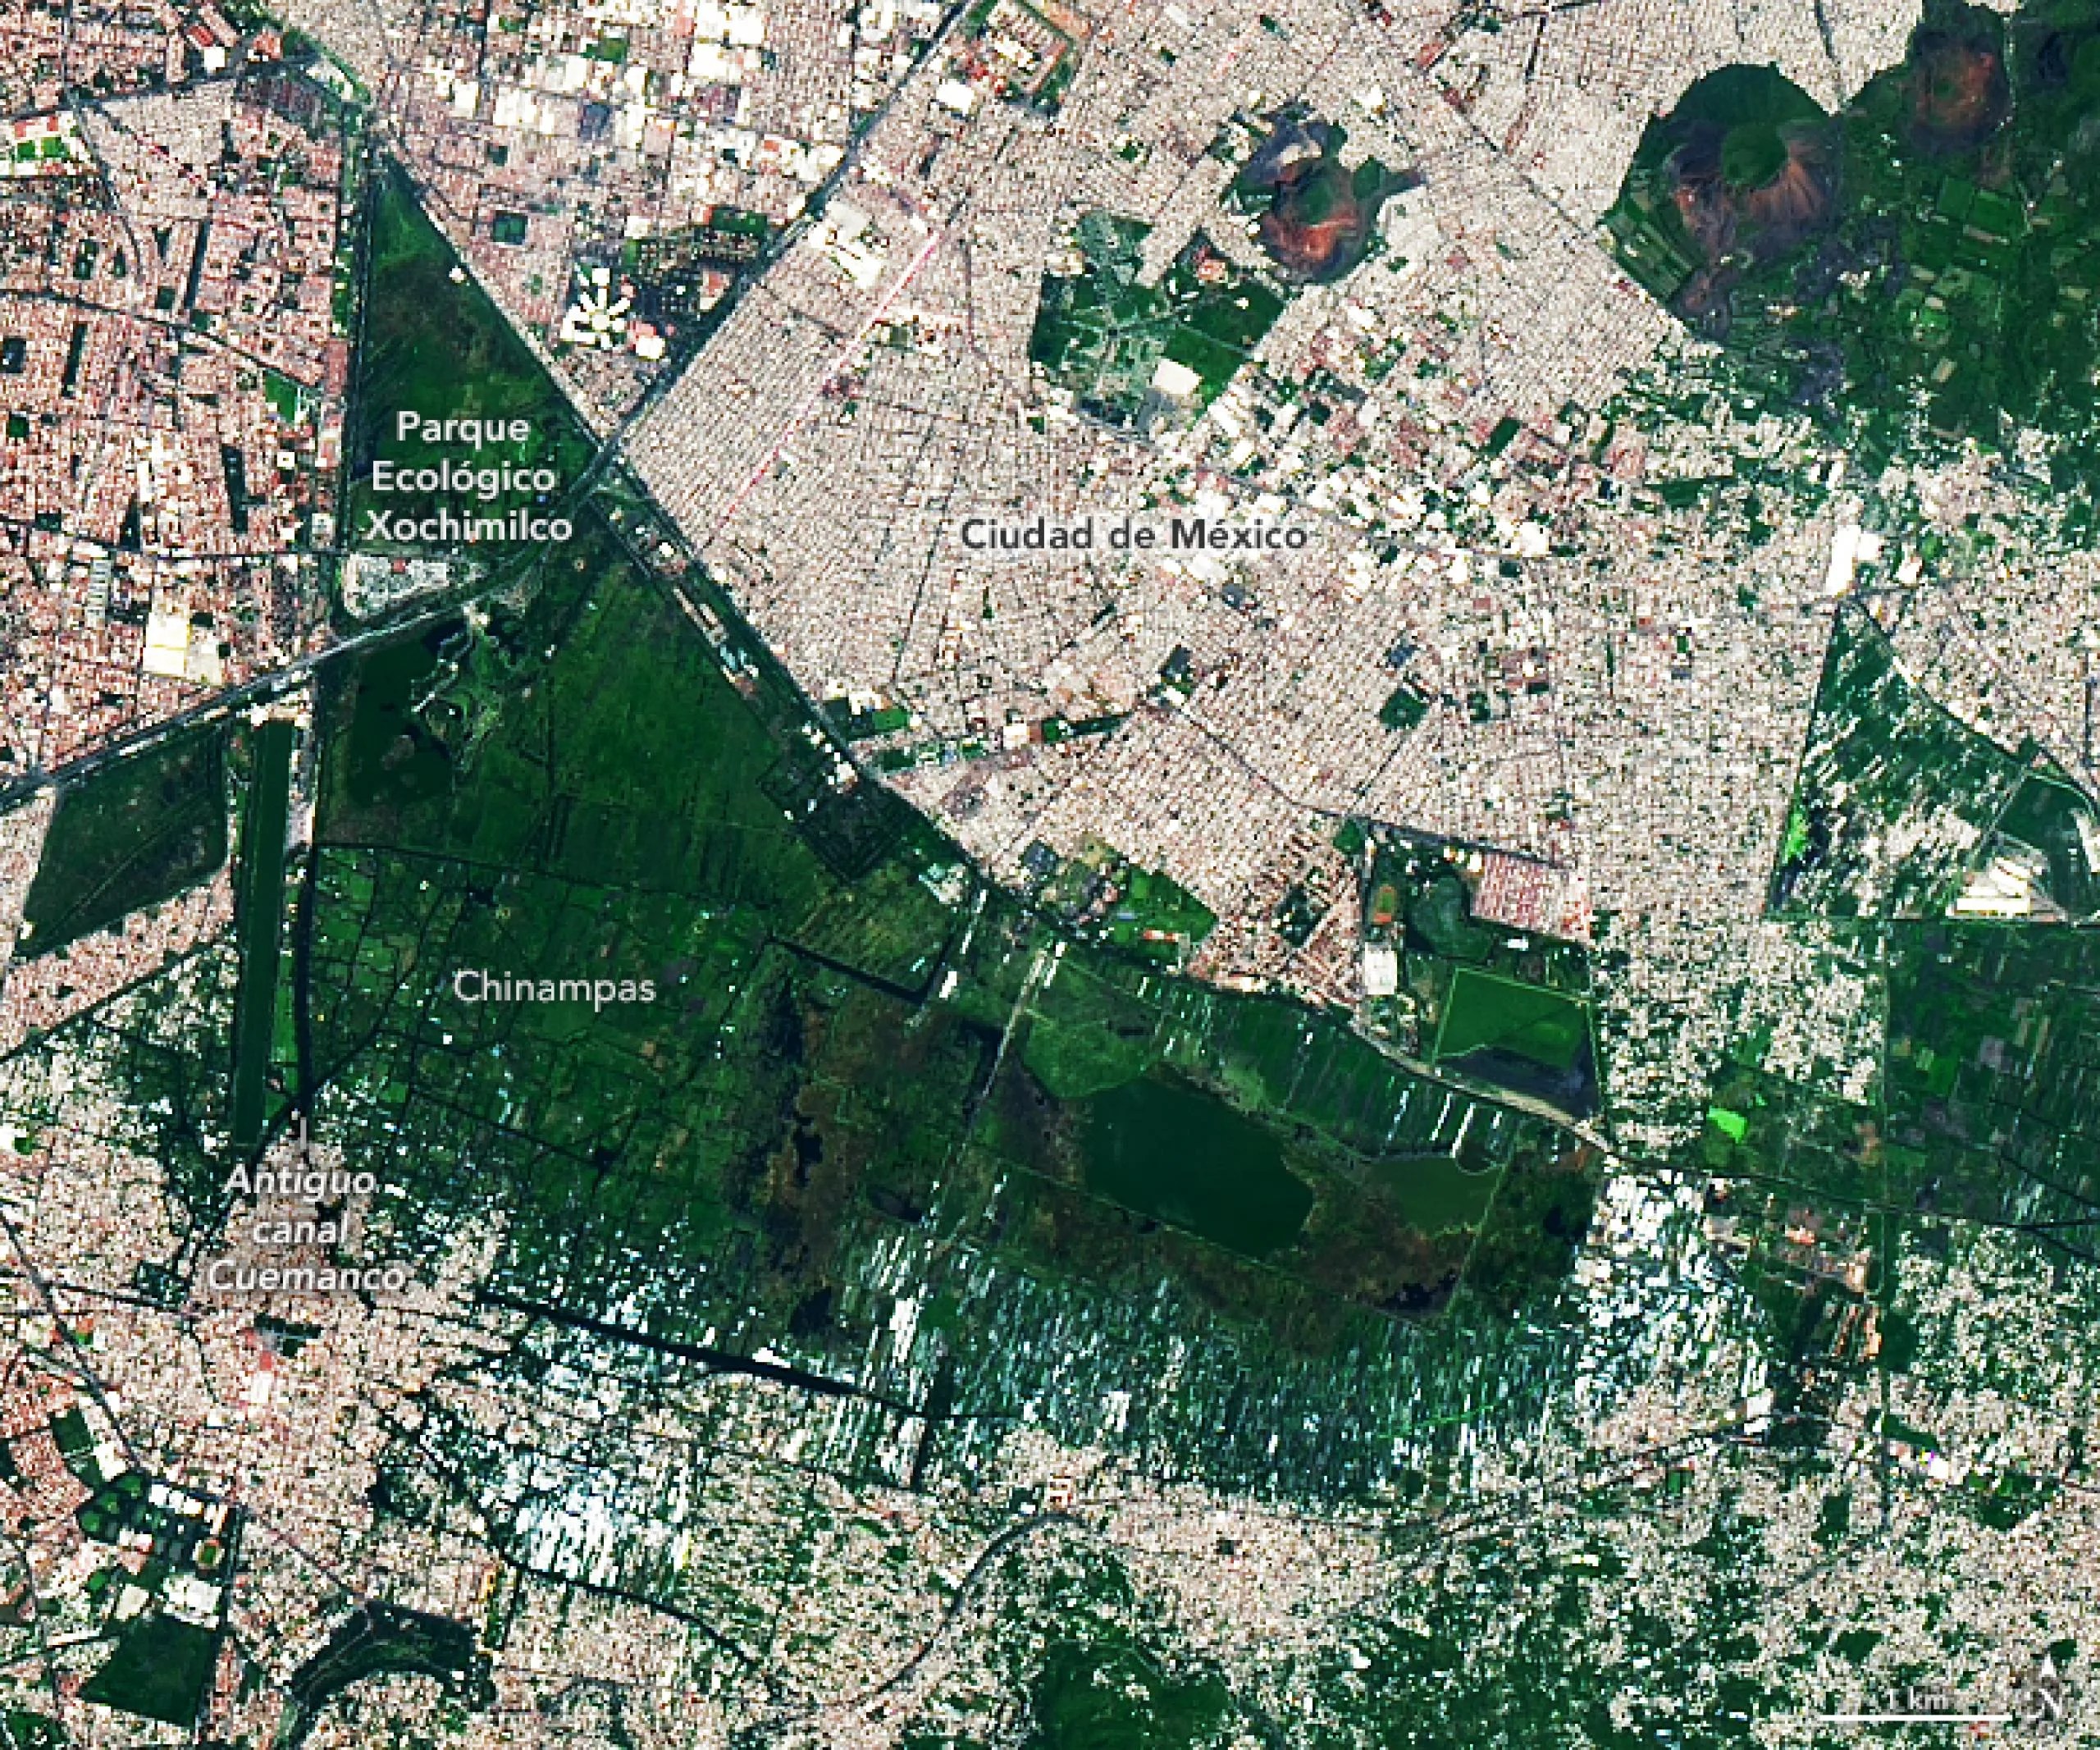 Chinampas milenarias en Ciudad de México vistas por el satélite Landsat 9.